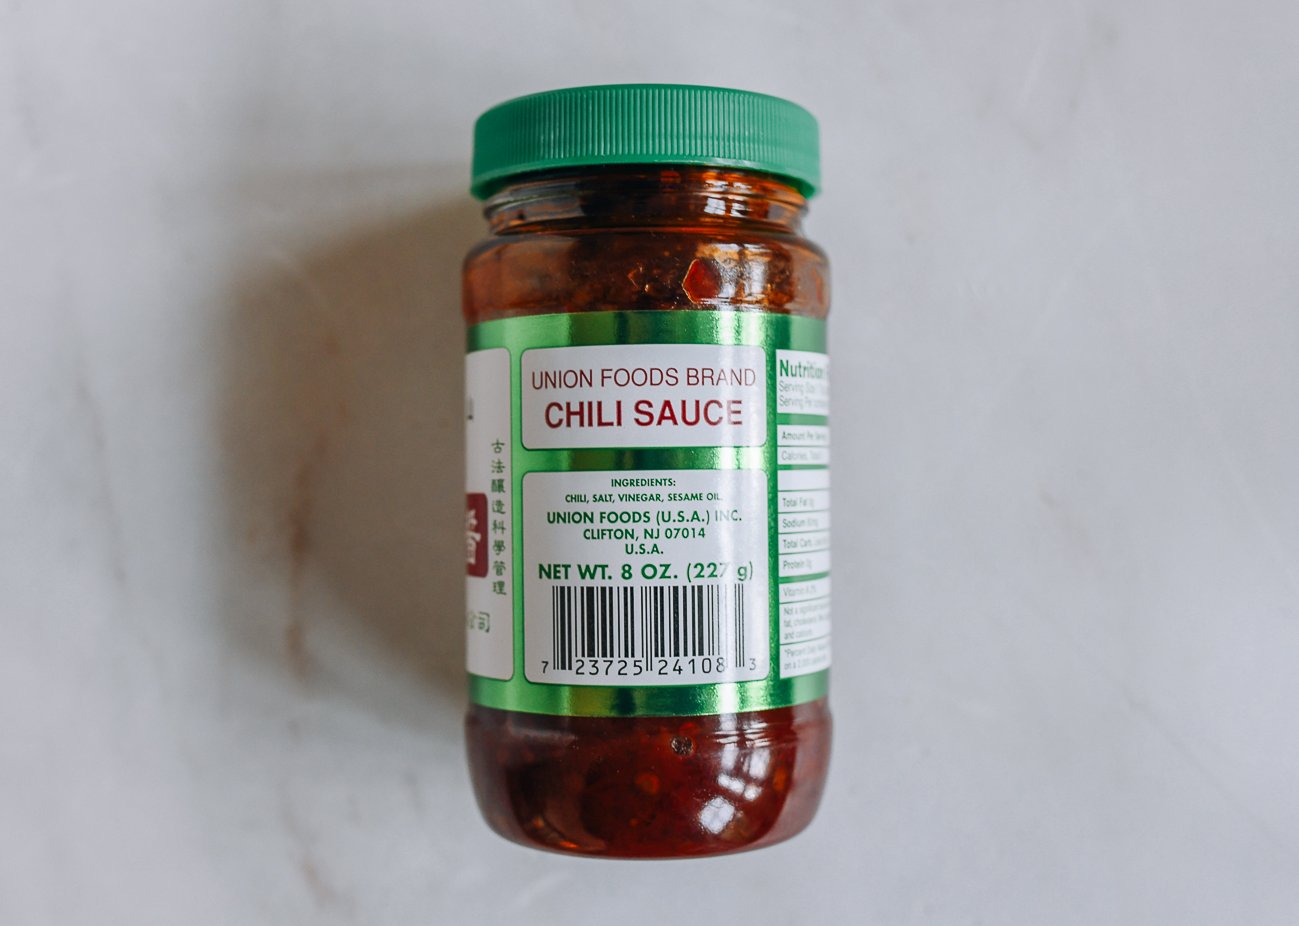 Chinese chili sauce